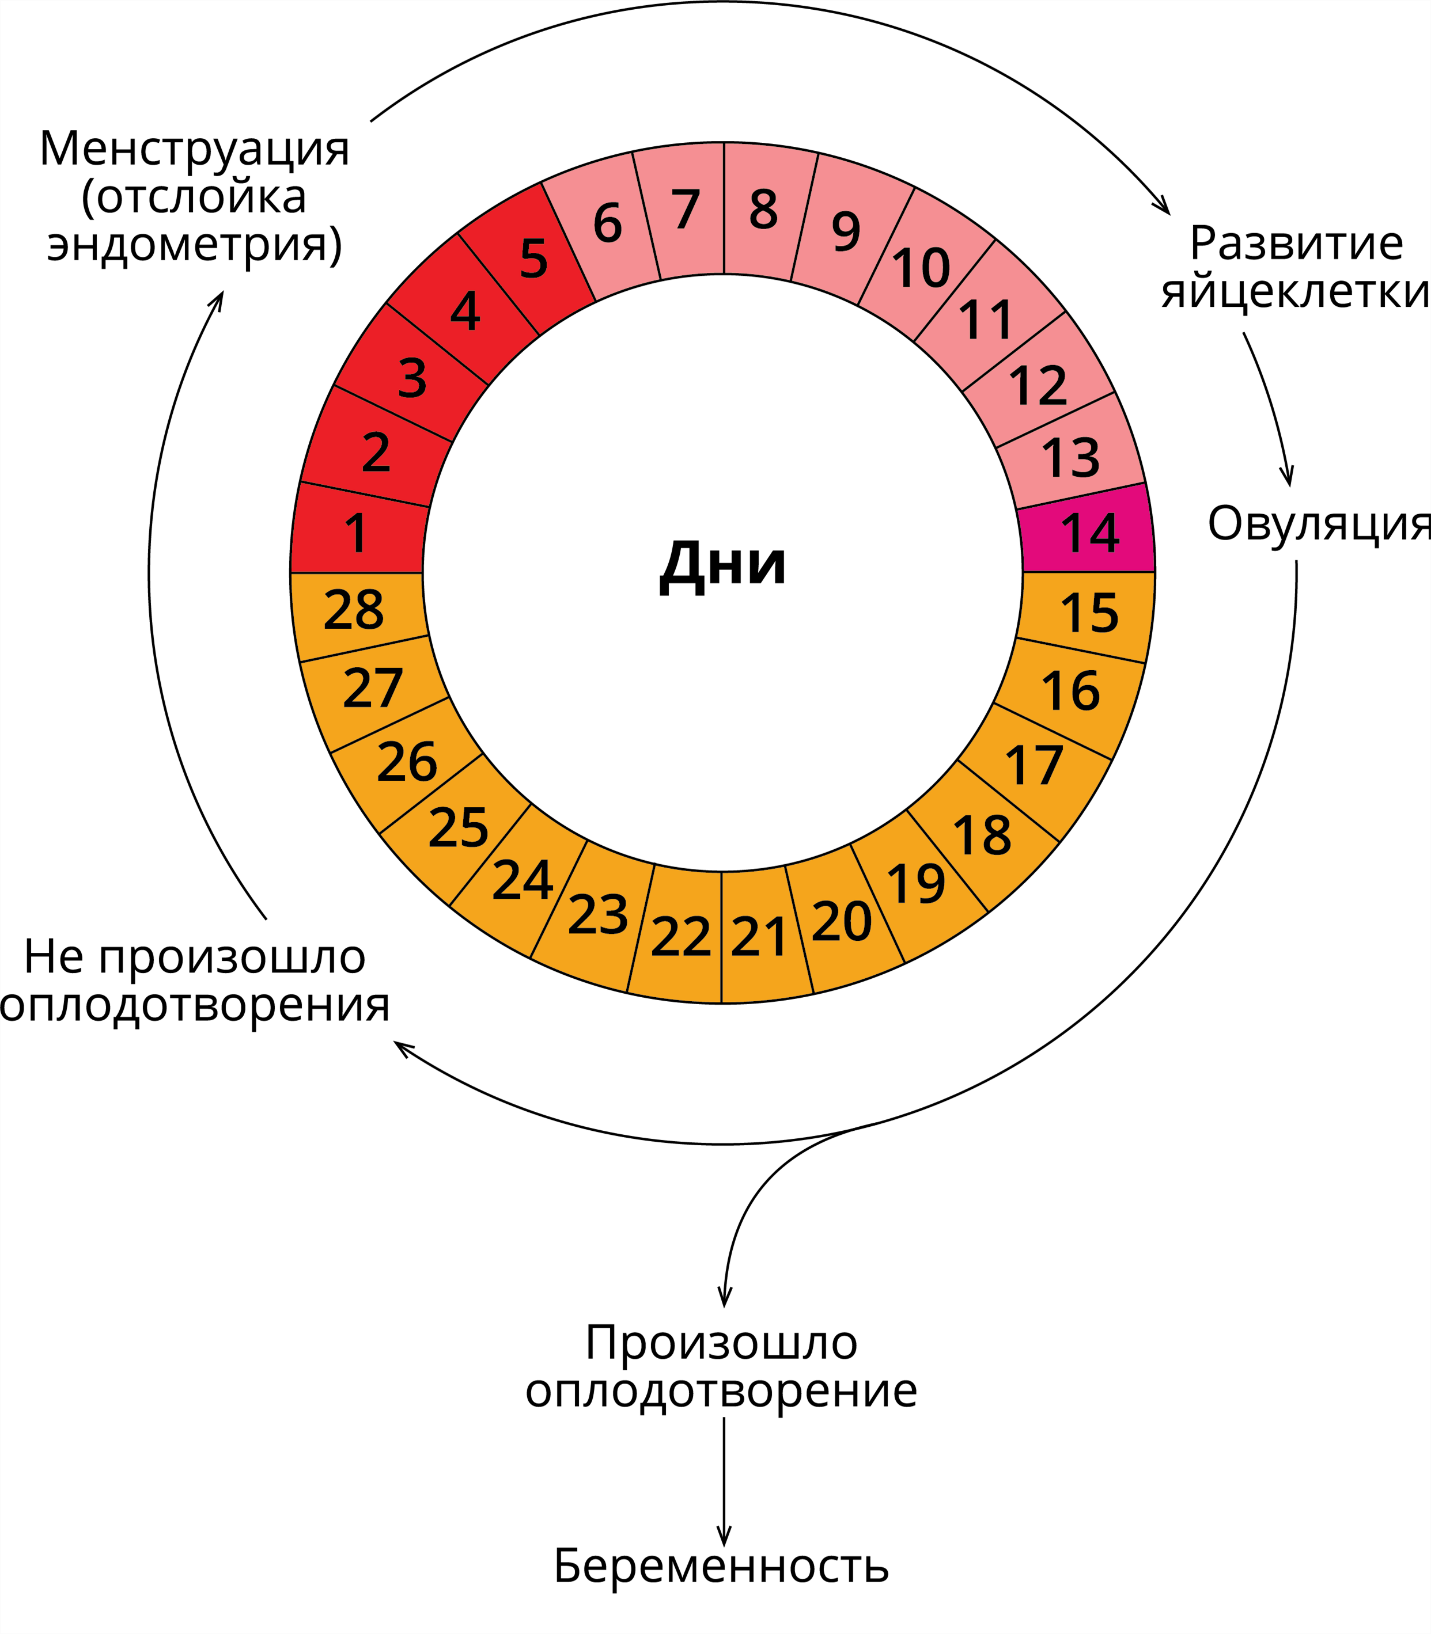 Схема цикличность этапов менструального цикла. Двухфазный менструационный цикл схема. Фазы менструационного цикла физиология. Фазы менструационного цикла анатомия. Система овуляции